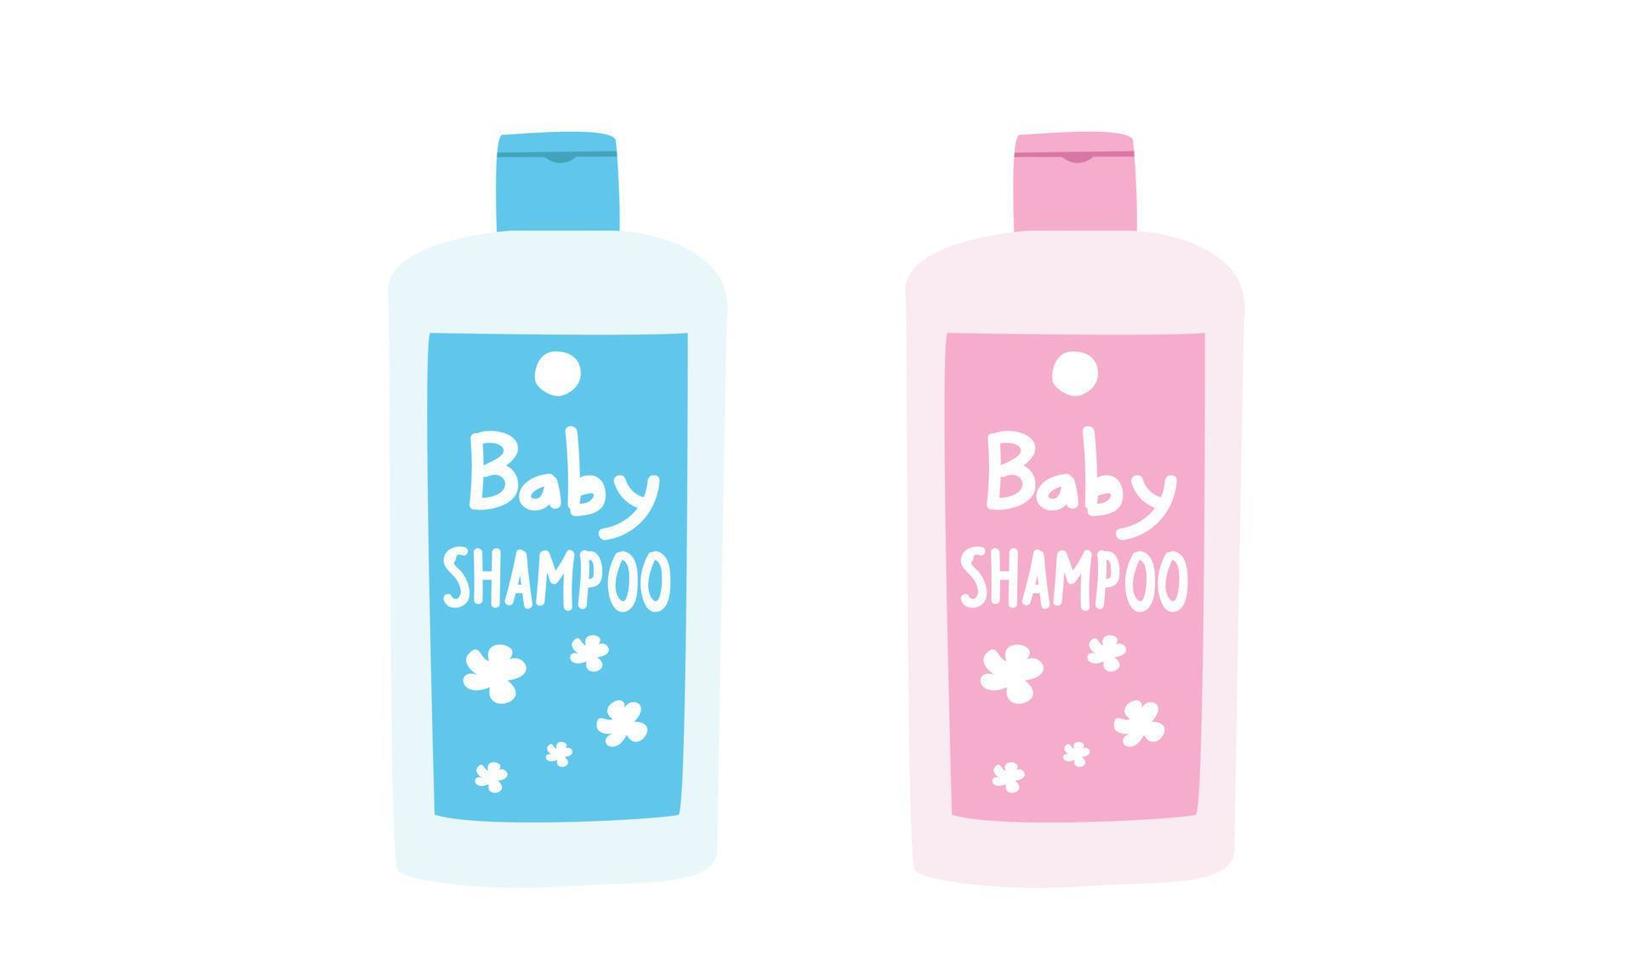 clipart de botella de champú para bebés. simples botellas azules y rosas lindas de champú para bebés, gel de ducha, loción, paquete de leche corporal ilustración vectorial plana. botellas de plástico de productos cosméticos para bebés estilo de dibujos animados vector